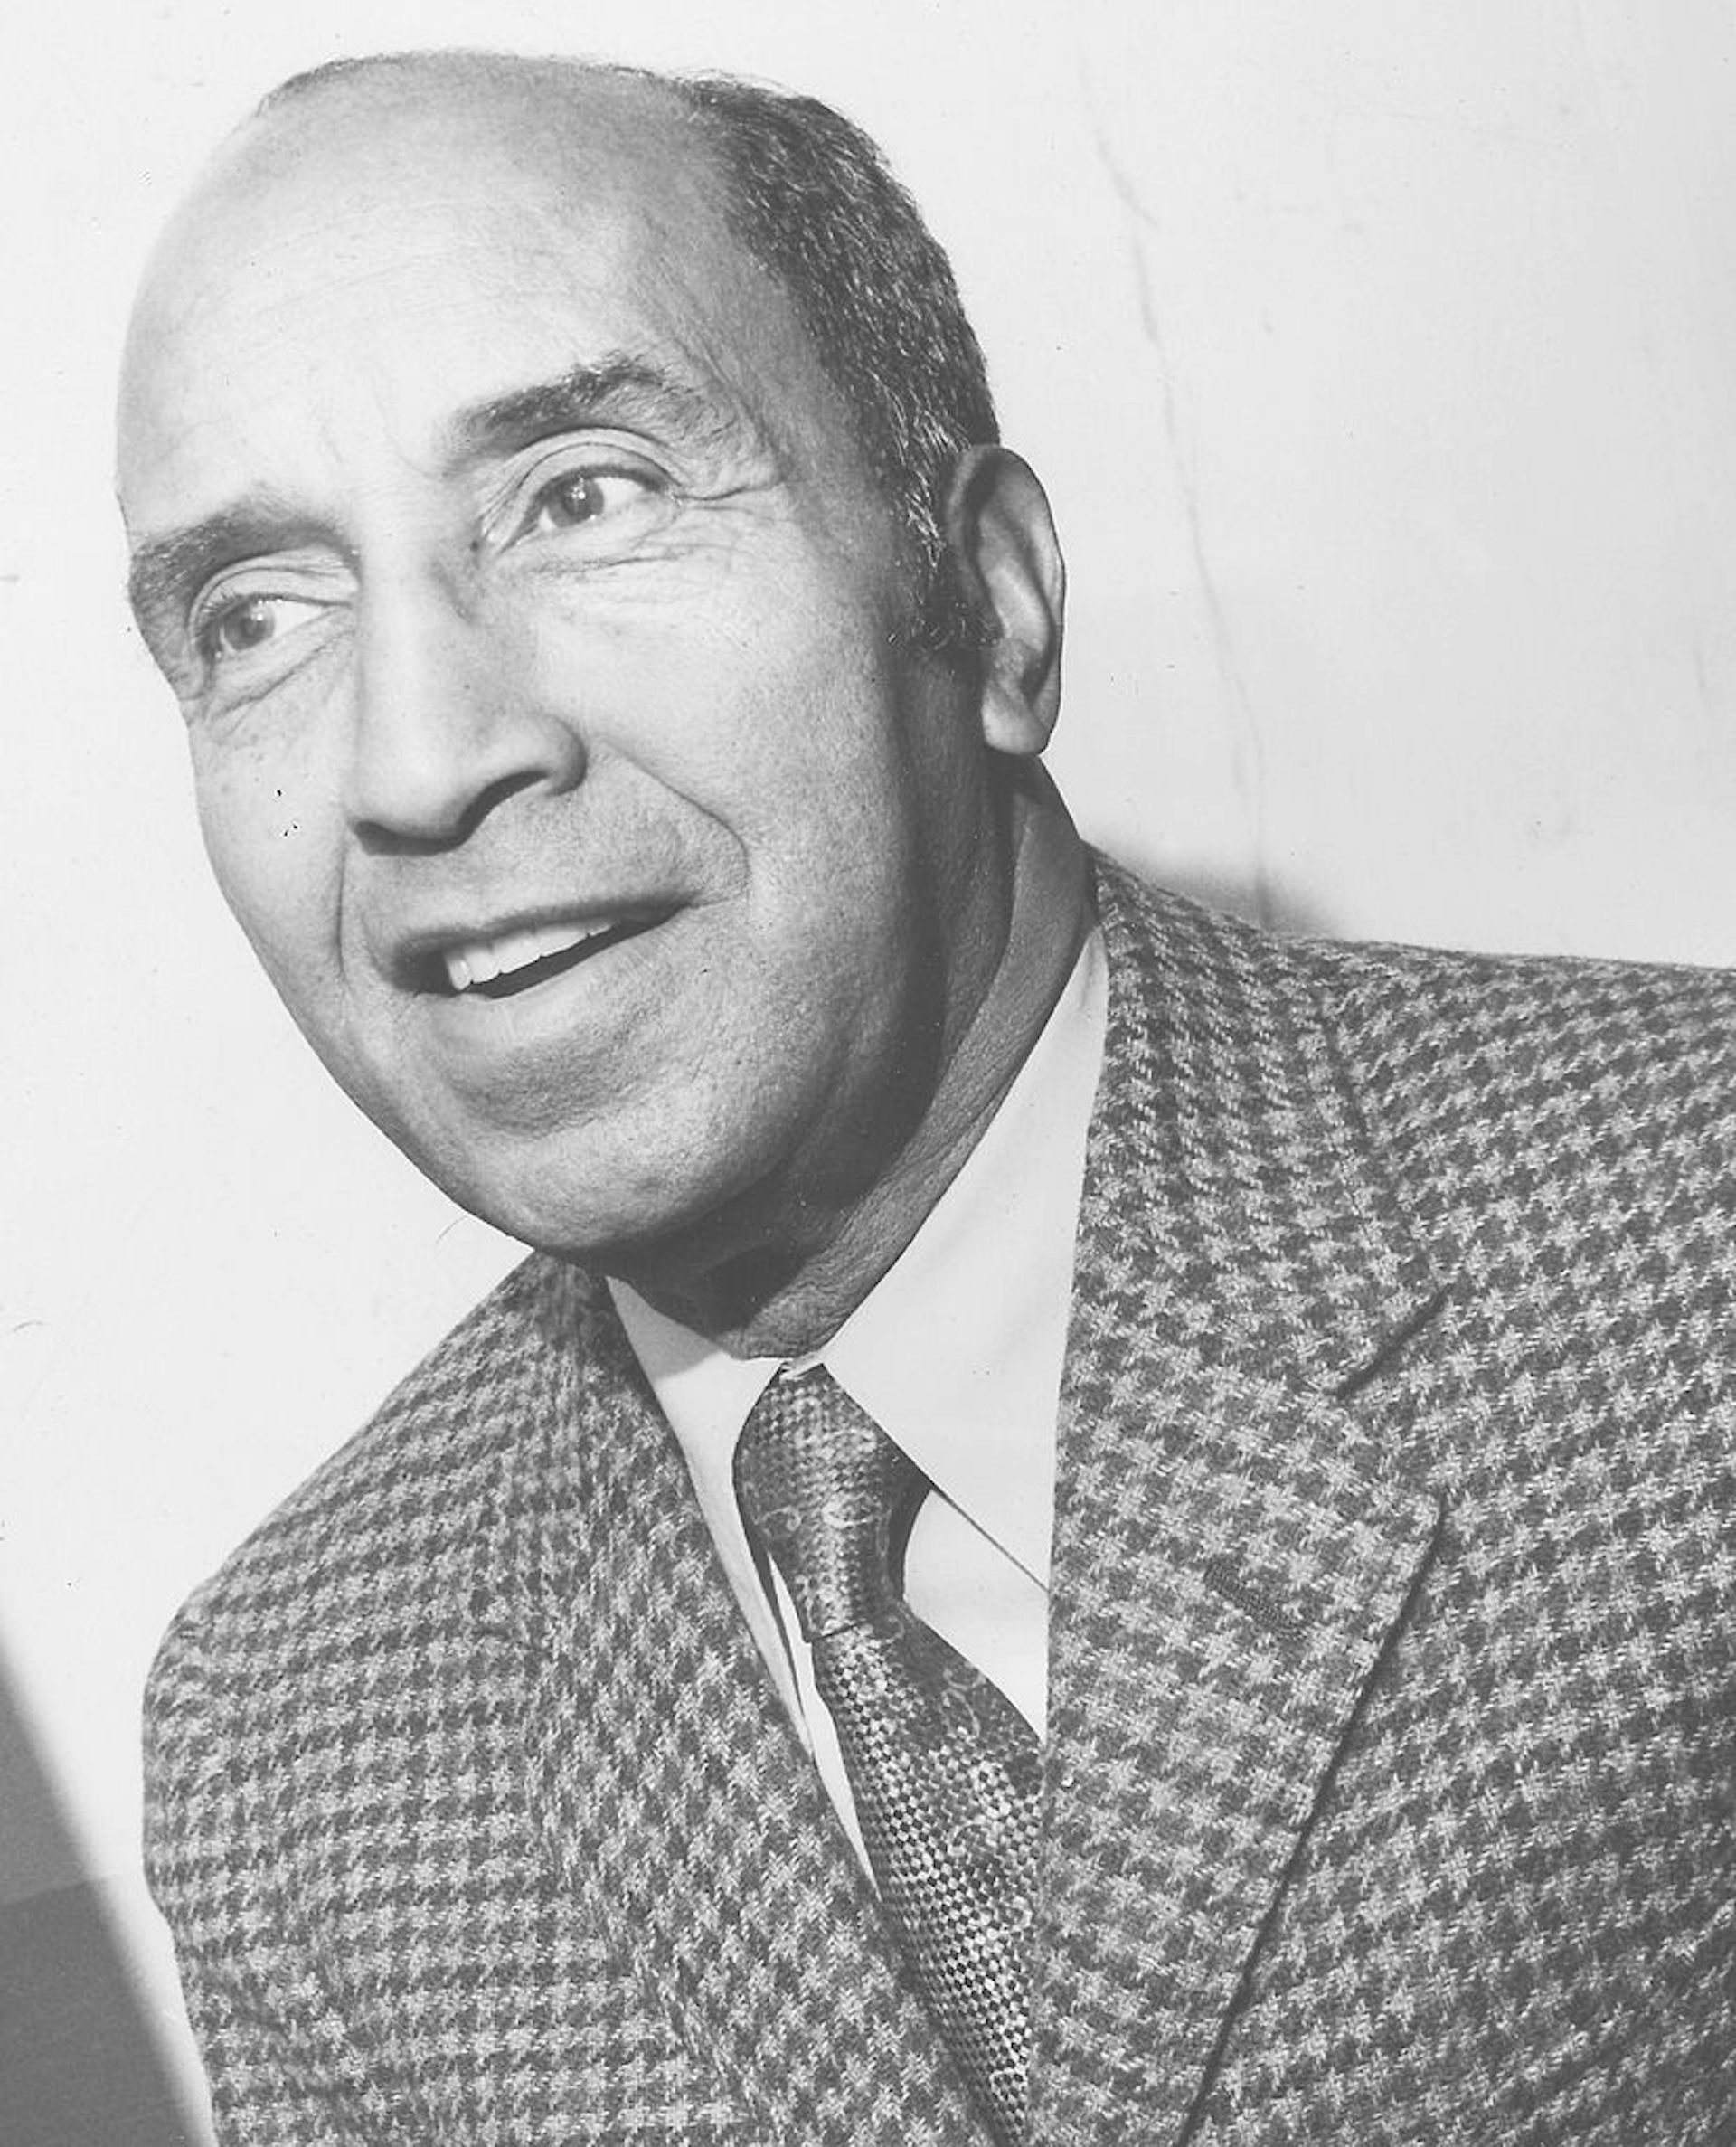  El reportero deportivo afroamericano Sam Lacy sonríe en un retrato en blanco y negro de 1960.